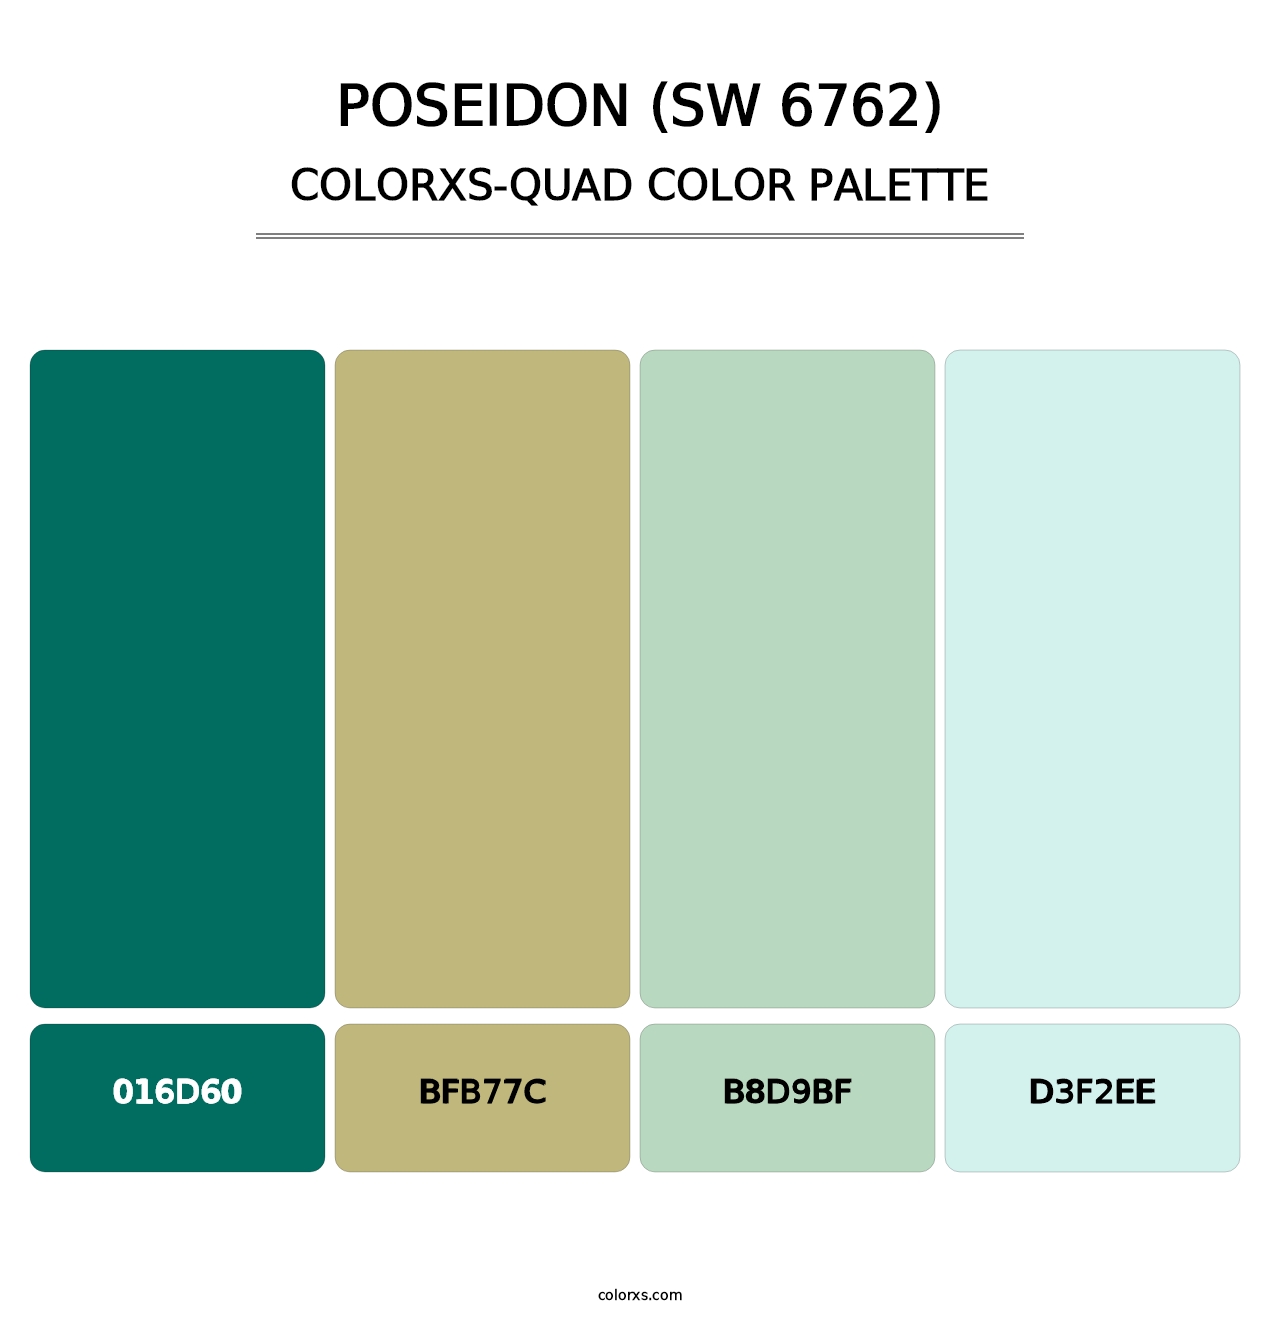 Poseidon (SW 6762) - Colorxs Quad Palette